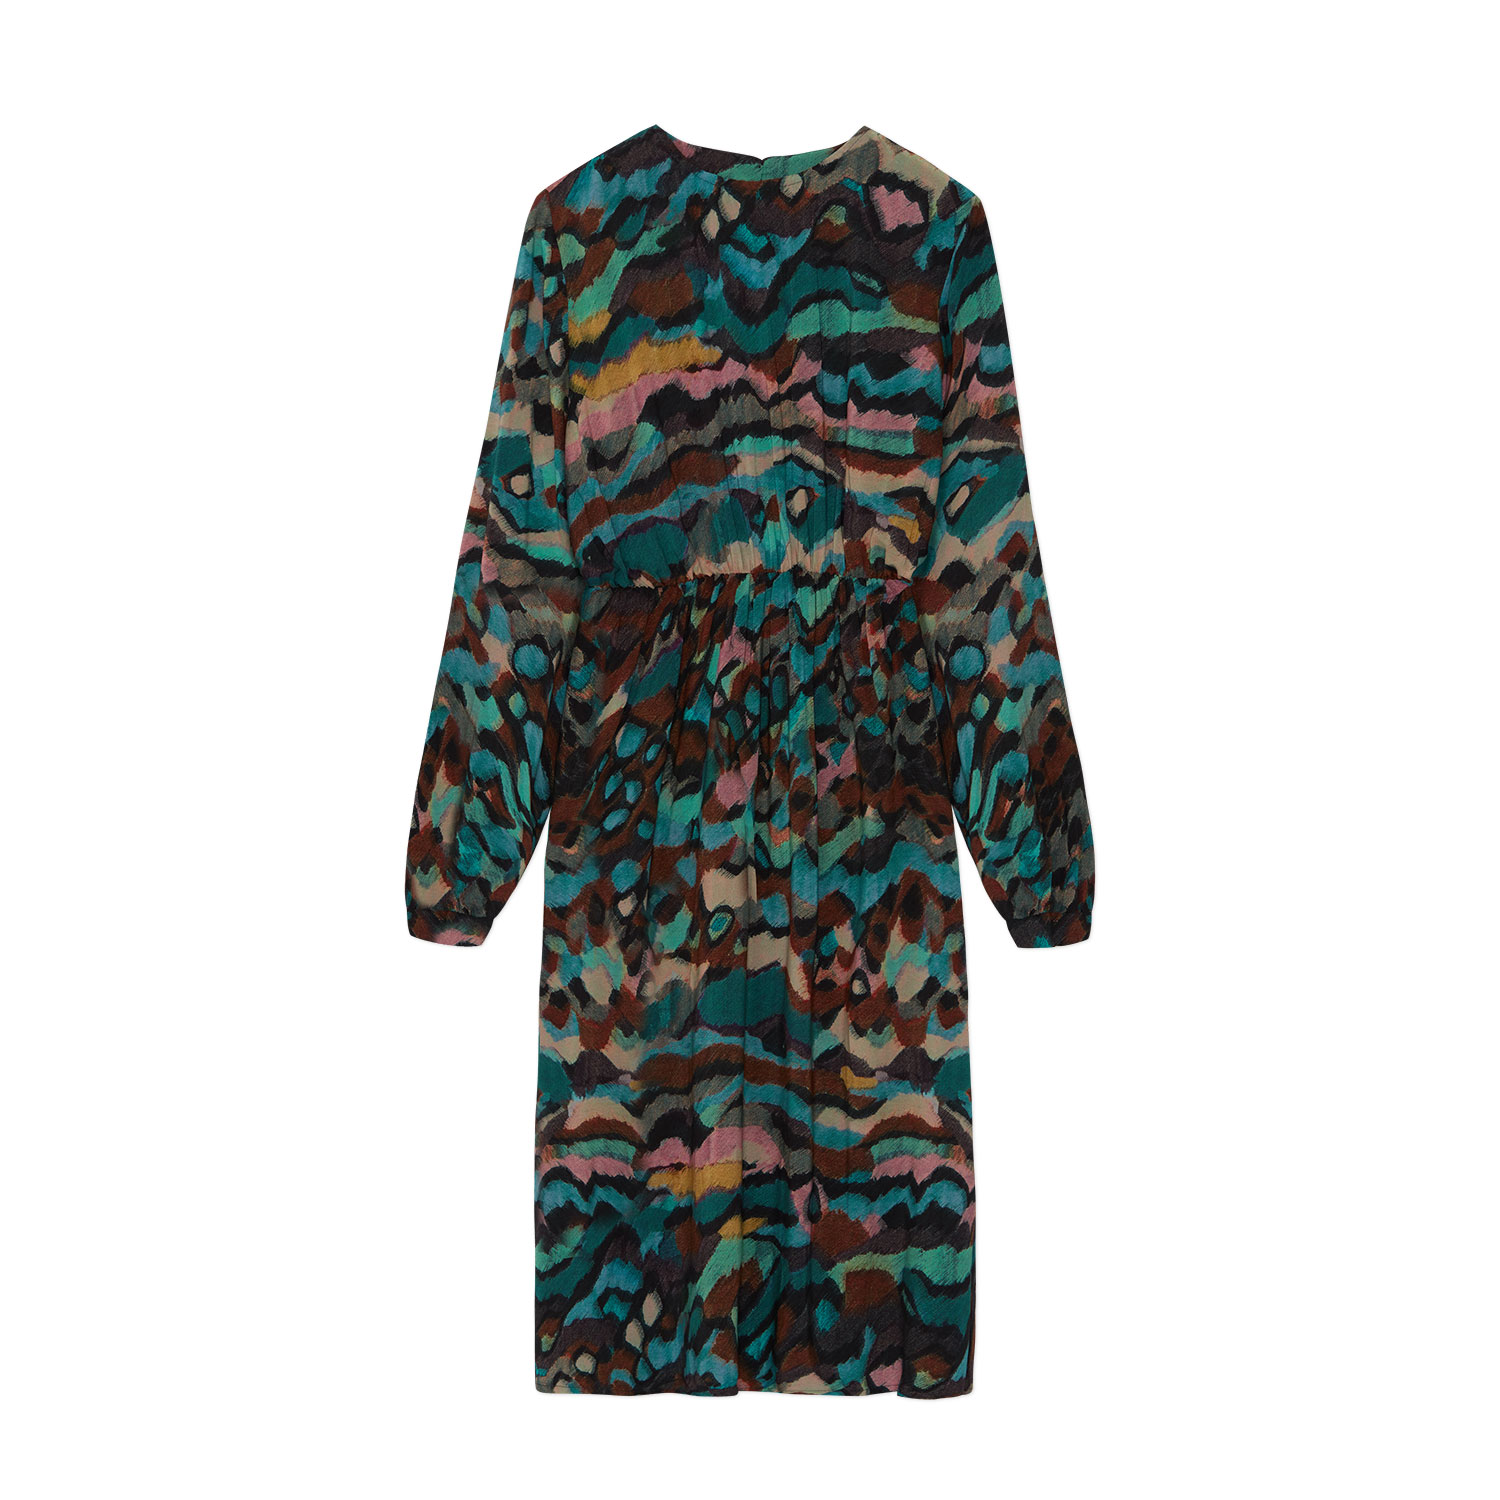 gemustertes Kleid aus Ecovero, langärmelig mit Taschen, Gummibund und Grafikmuster in Blau-Grün